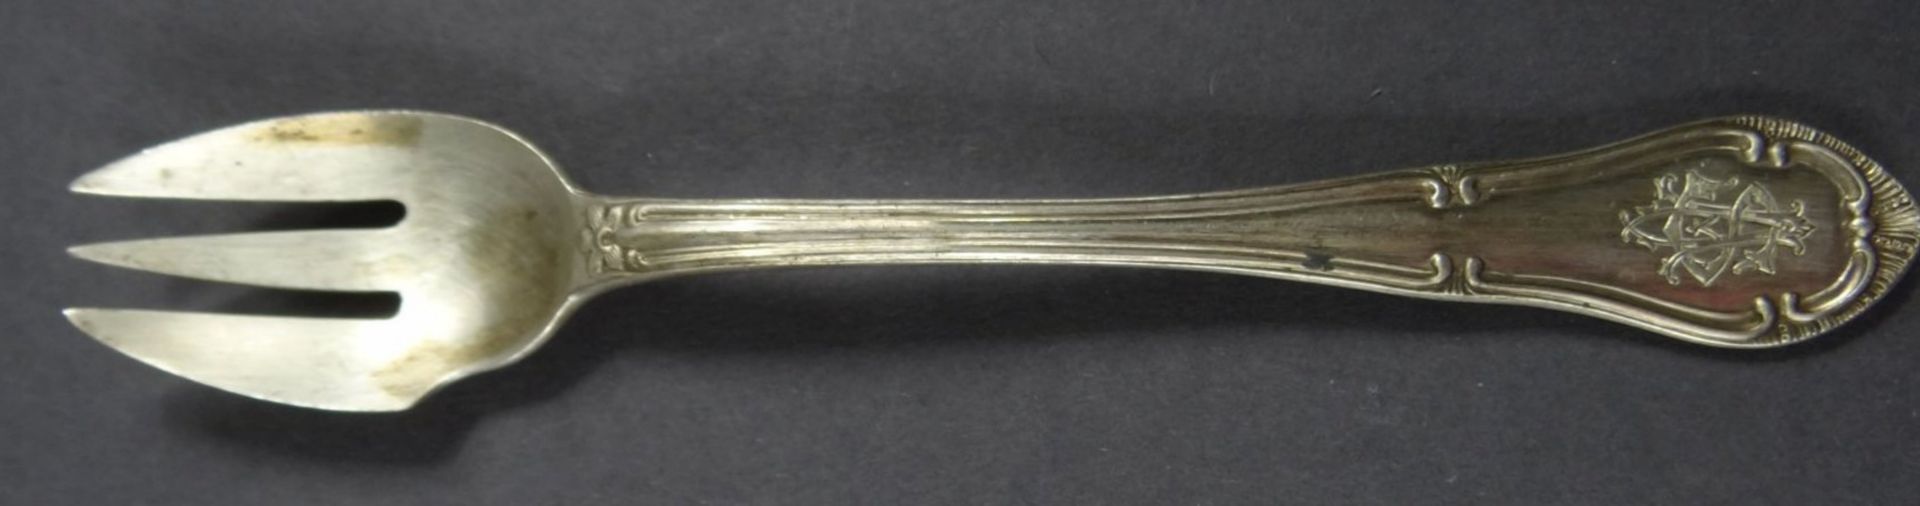 kl. massive Silbergabel,-800- Gebr. Friedlaender, Ziermonogramm, L-14 cm, 28 gr. - Image 2 of 4